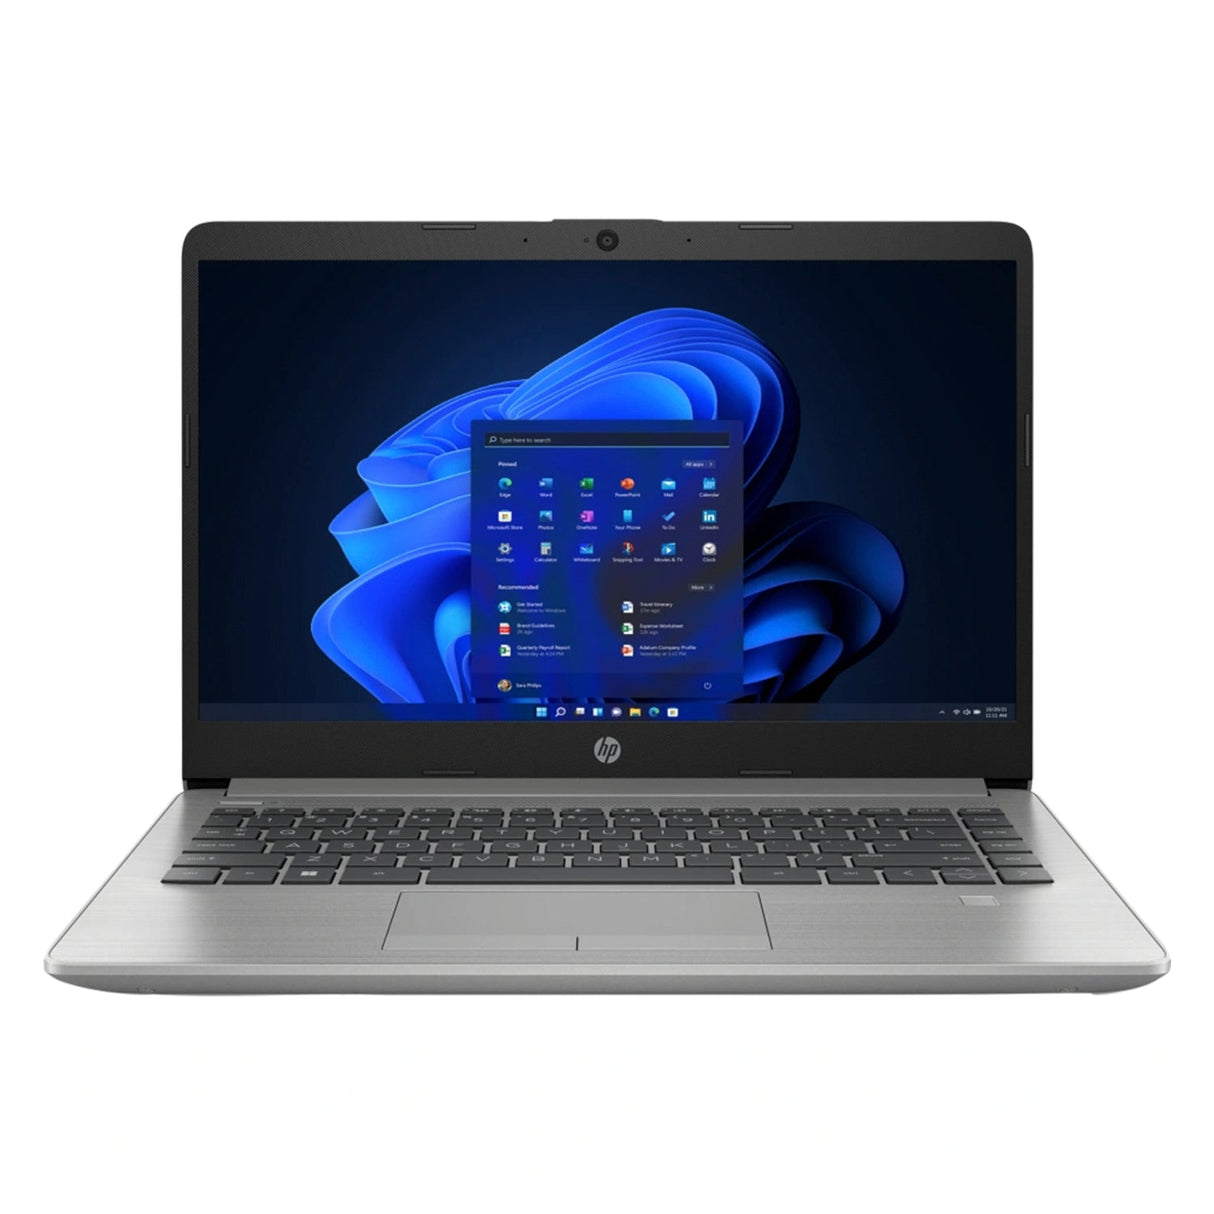 Laptop HP 240 G9 Intel Celeron N4500 Ram 4GB Disco 1TB HDD 14″ HD FreeDos